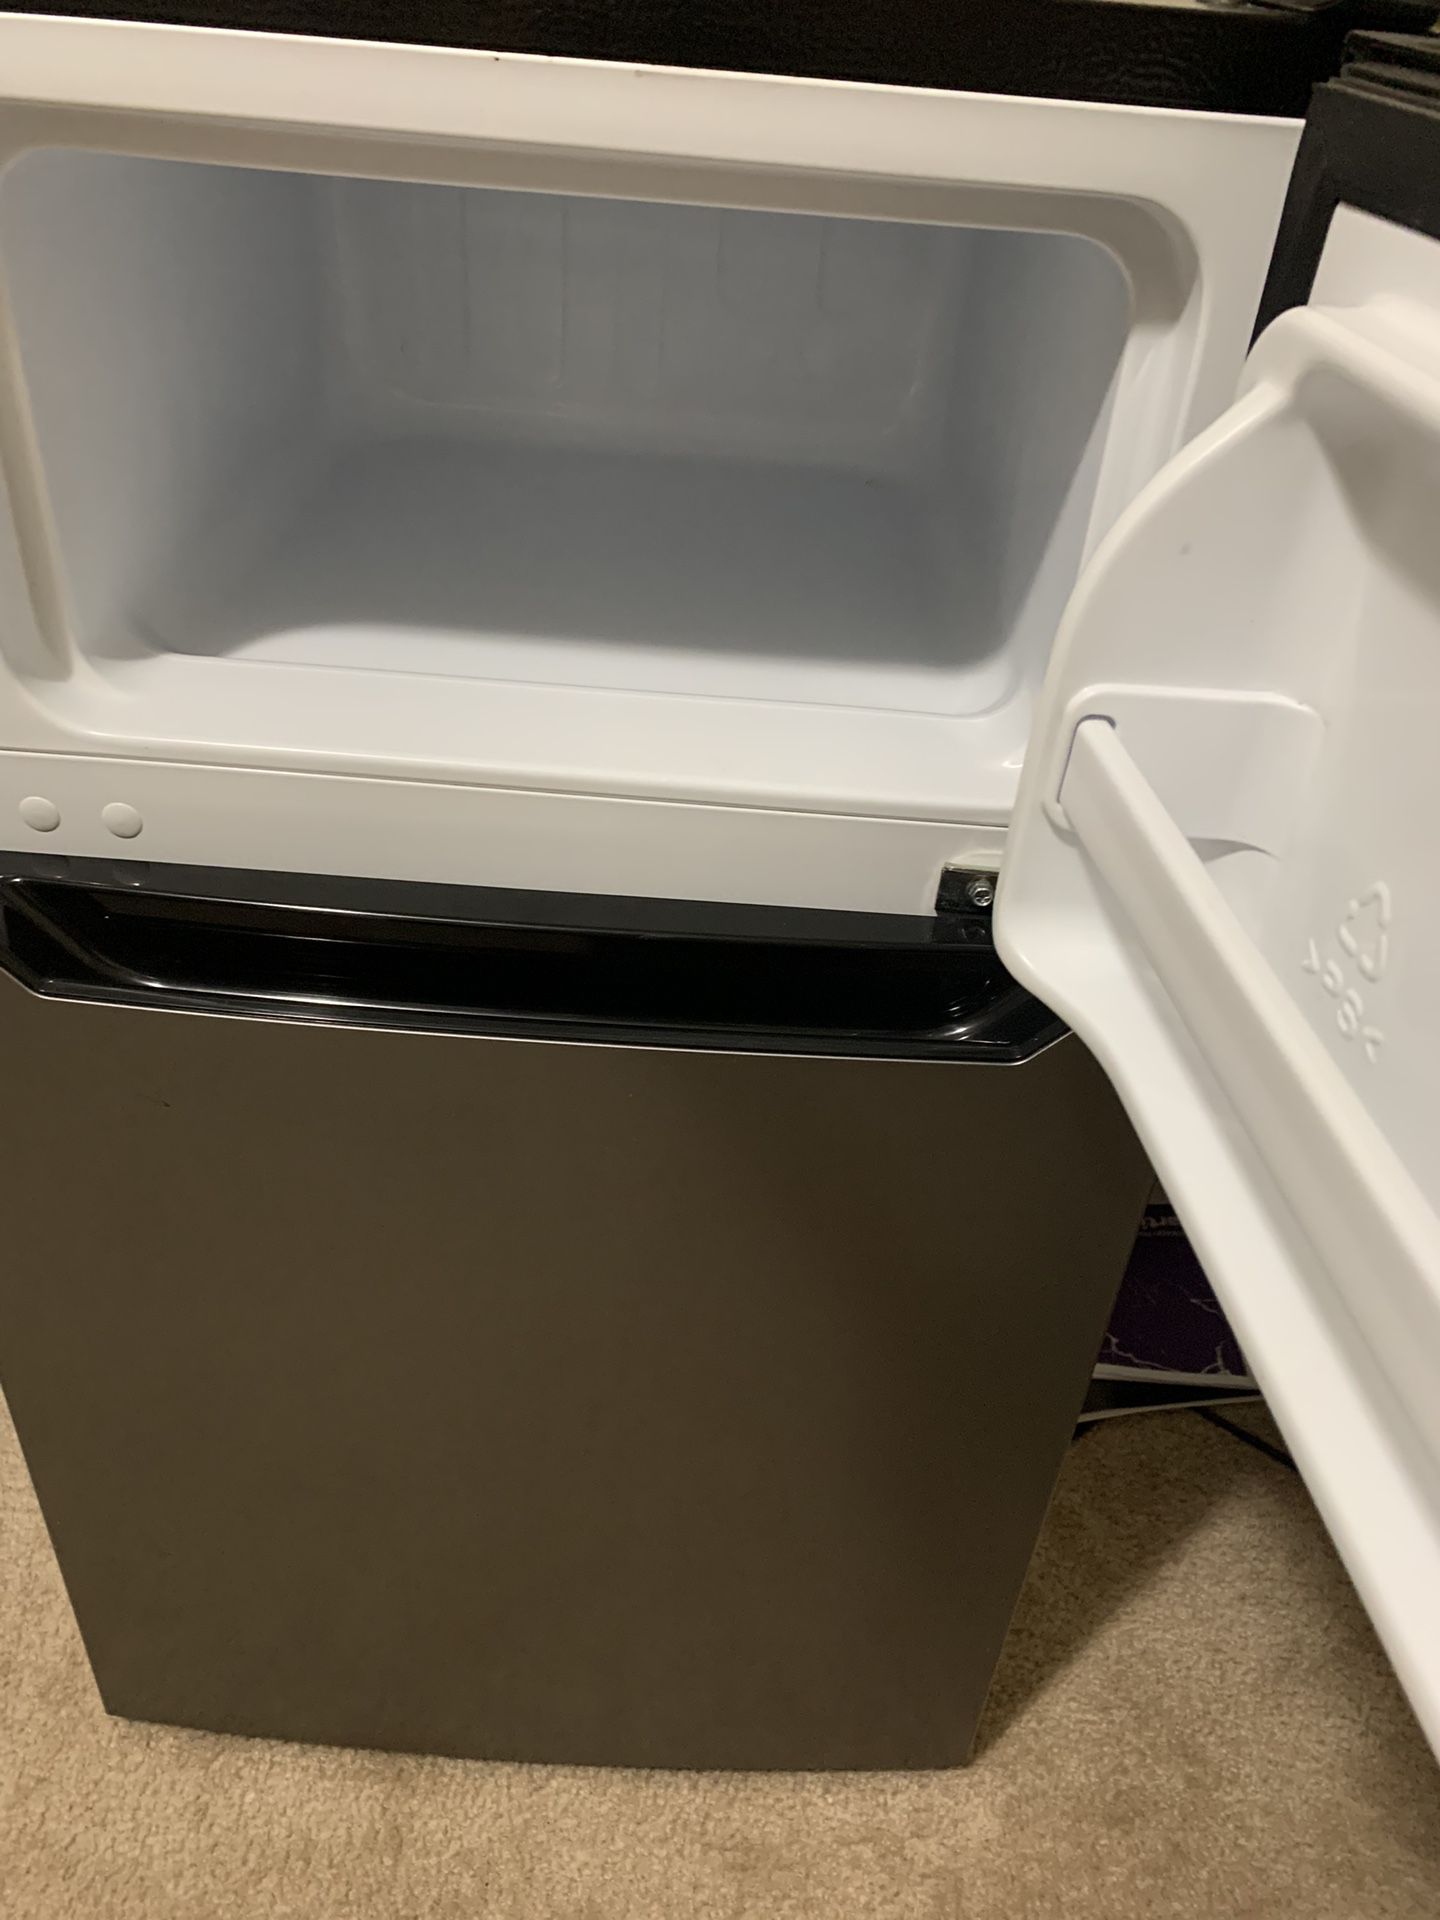 Hisense Mini-fridge